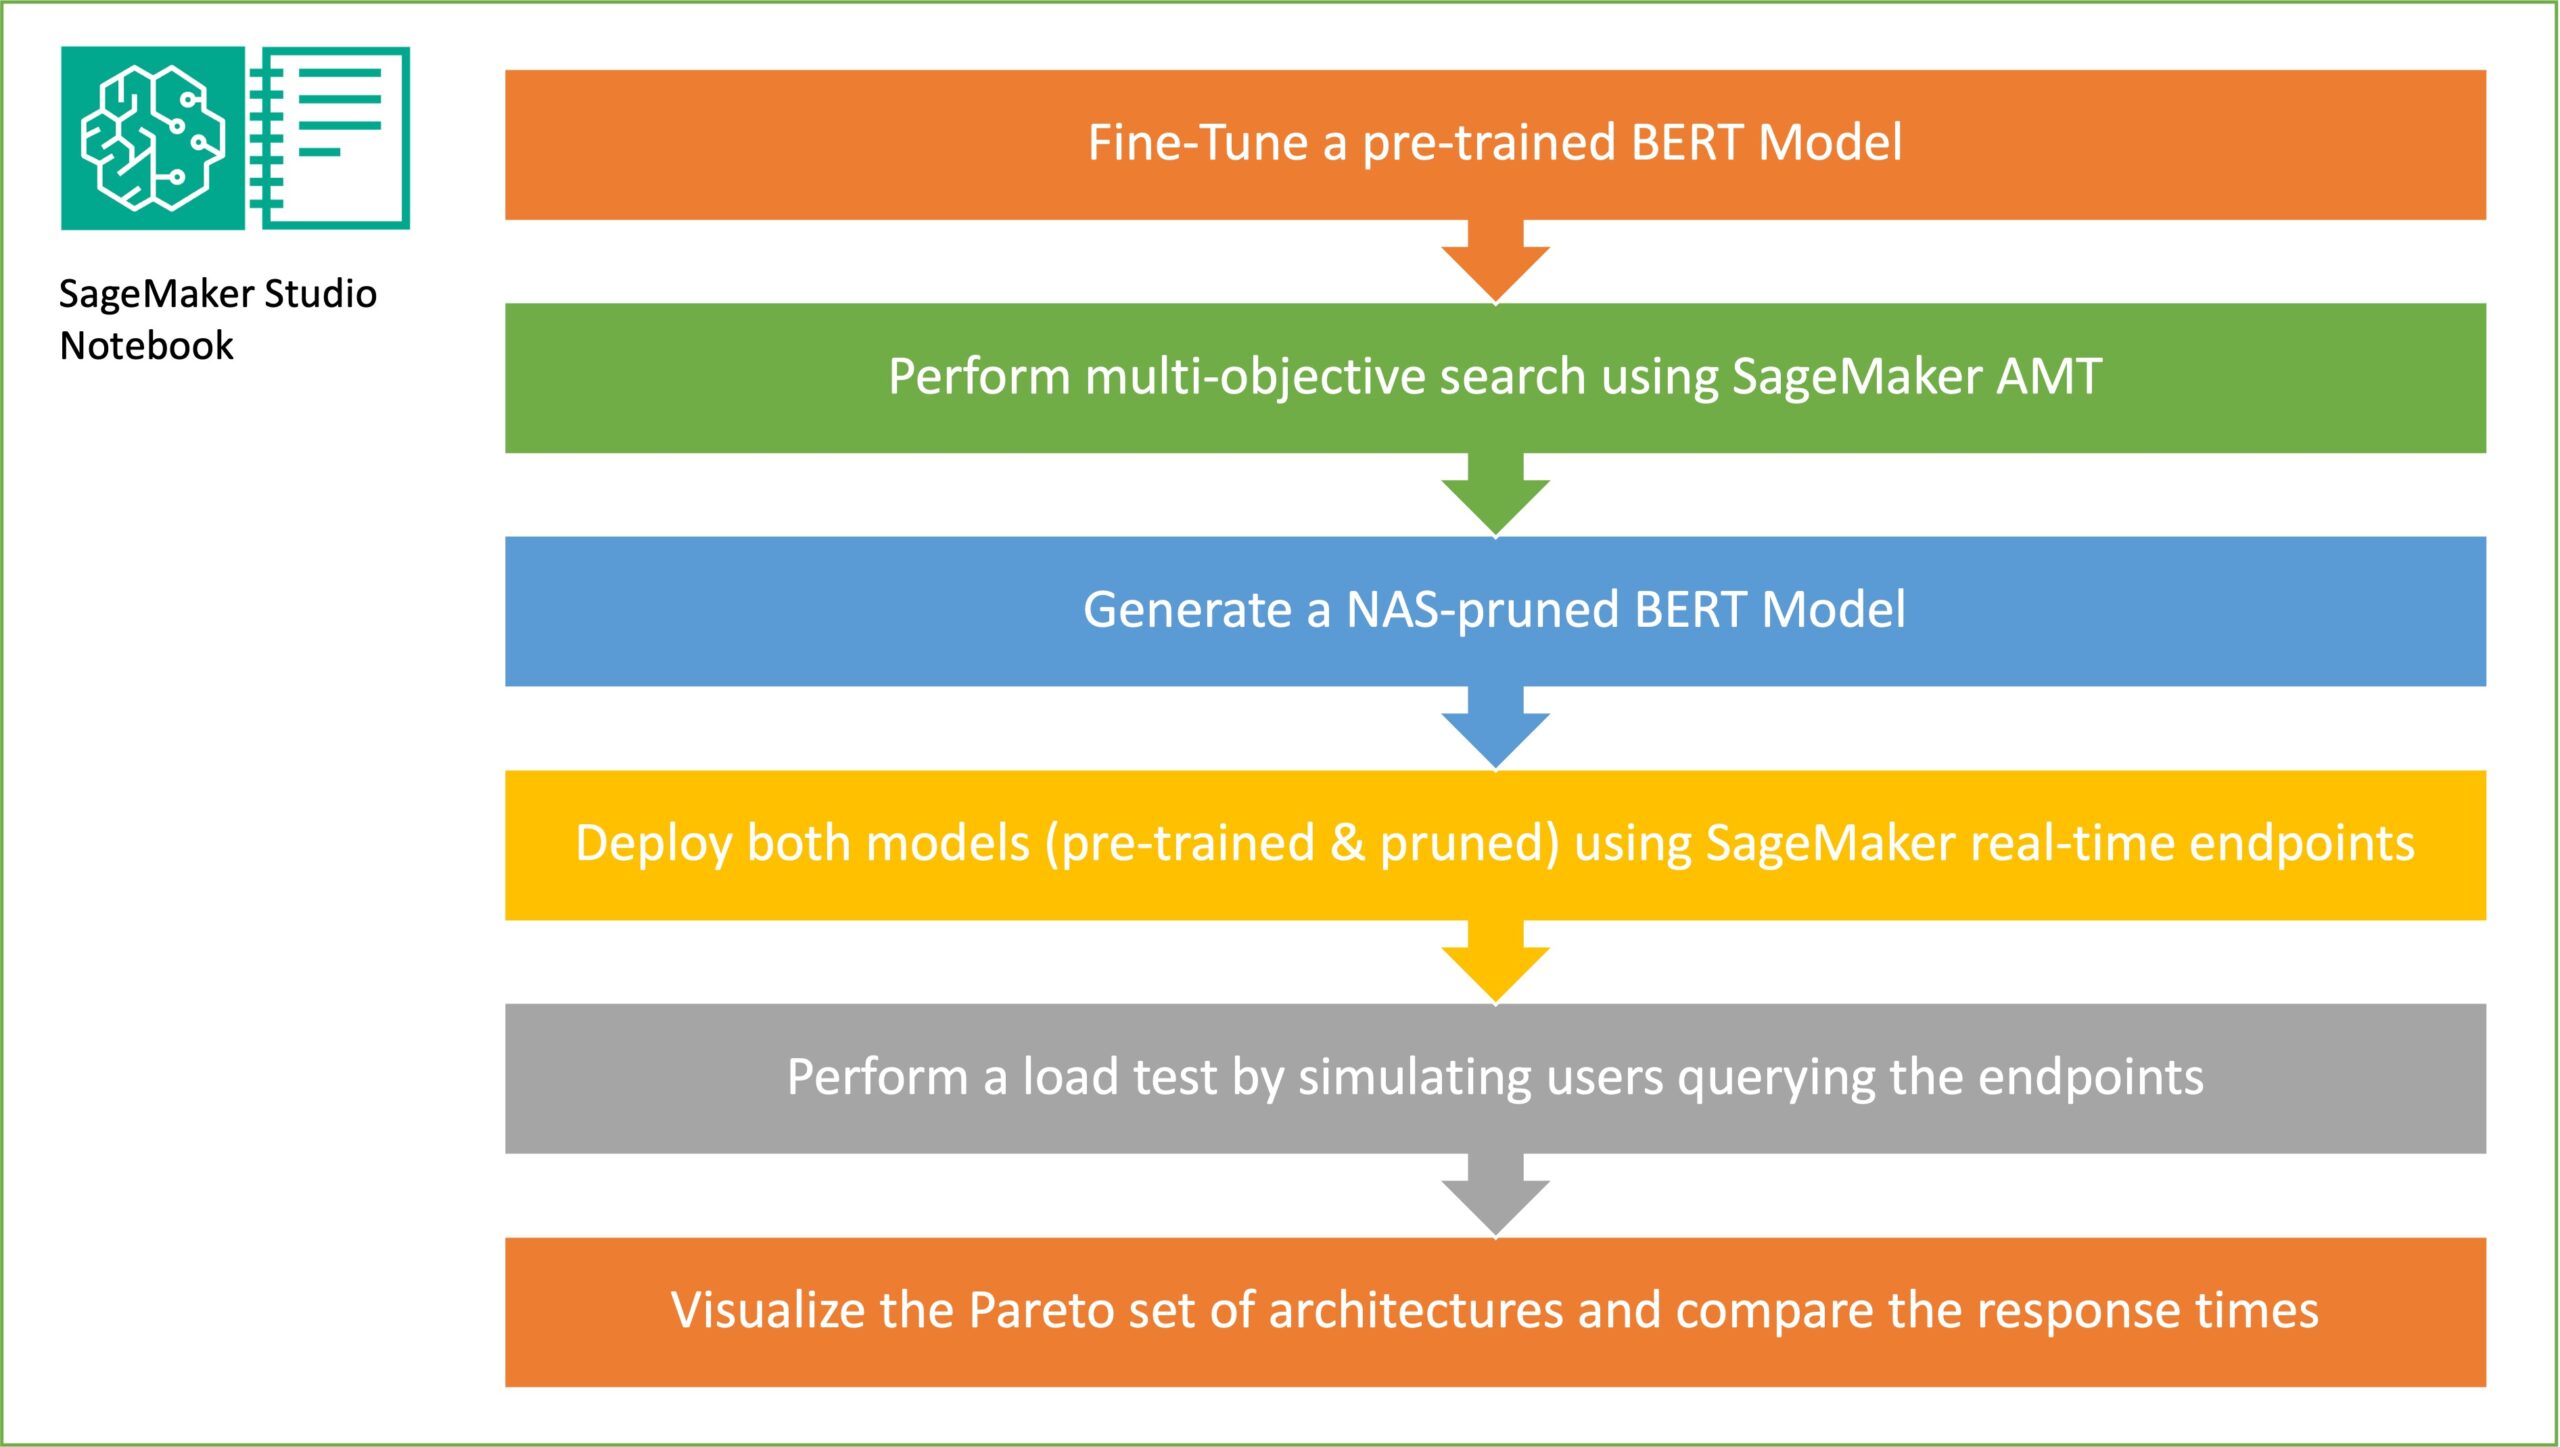 Skróć czas wnioskowania dla modeli BERT, korzystając z wyszukiwania architektury neuronowej i automatycznego dostrajania modelu SageMaker | Usługi internetowe Amazona